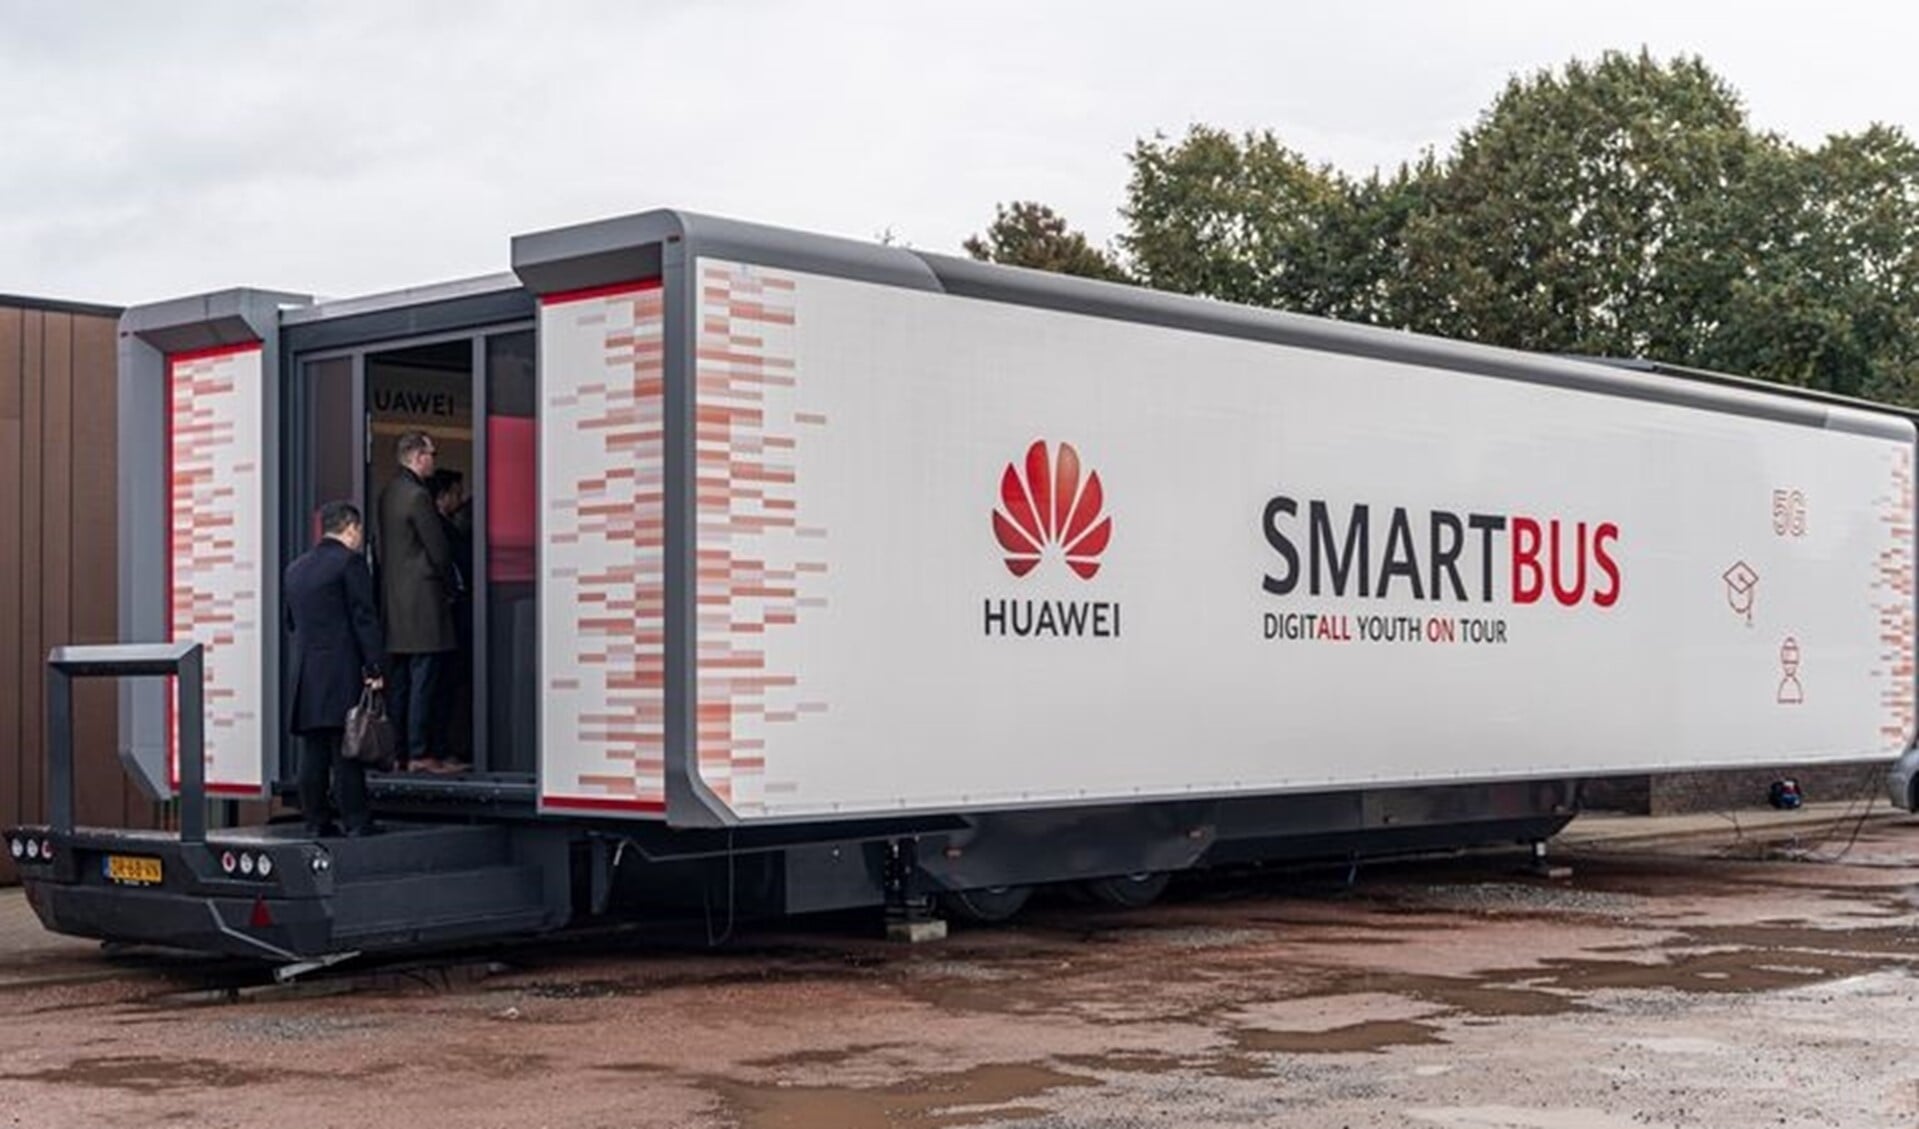 De SmartBus is een mobiel schoollokaal met een interactief programma op het gebied van digitale vaardigheden (foto: pr Huawei).